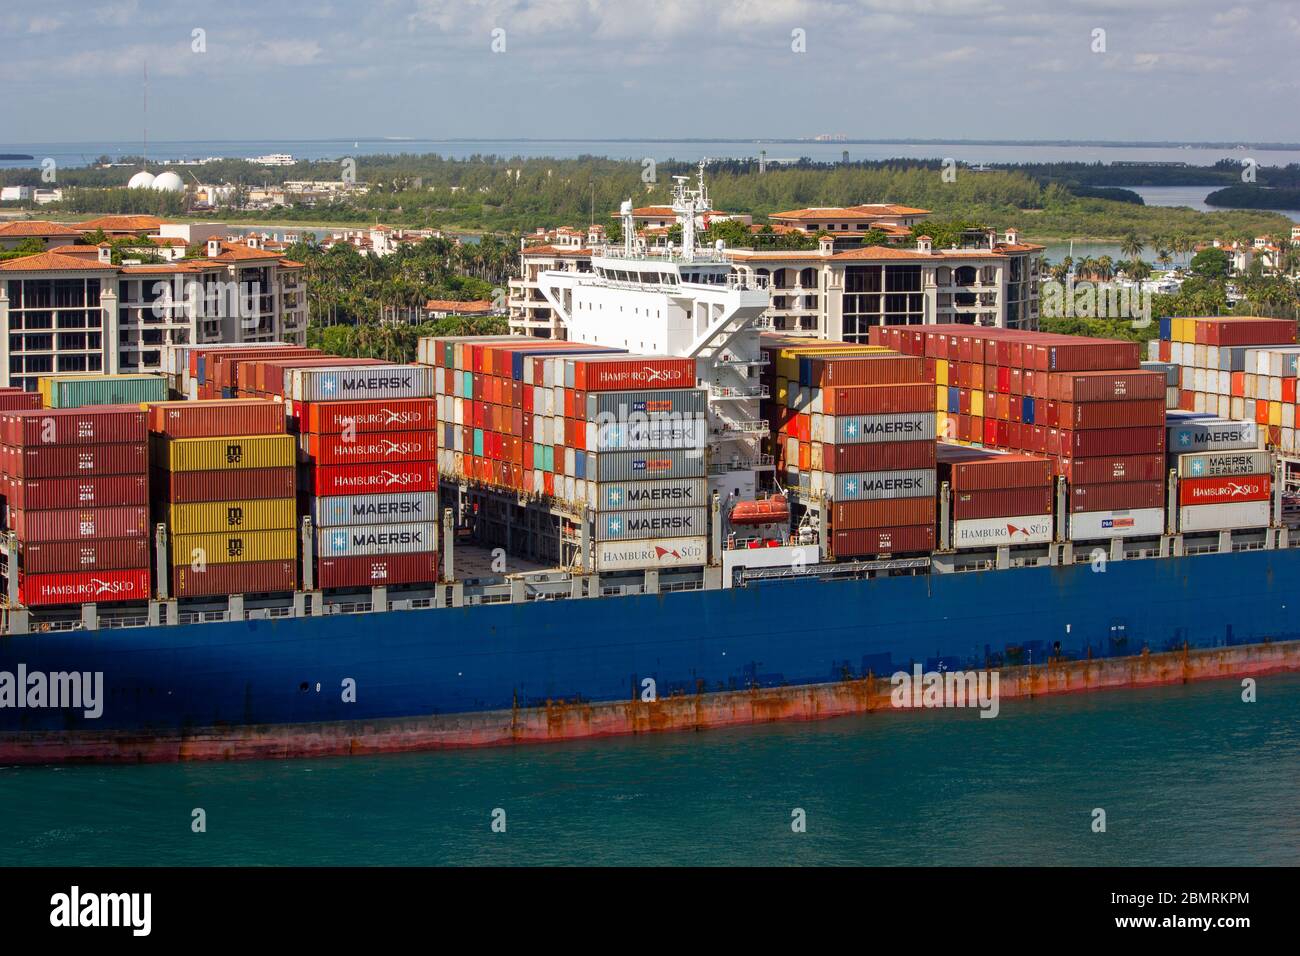 Miami Beach, Floride, les bateaux à conteneurs quittent partiellement le port en passant par l'île de pêcheur par le gouvernement coupé près de South Beach du port de miami Banque D'Images